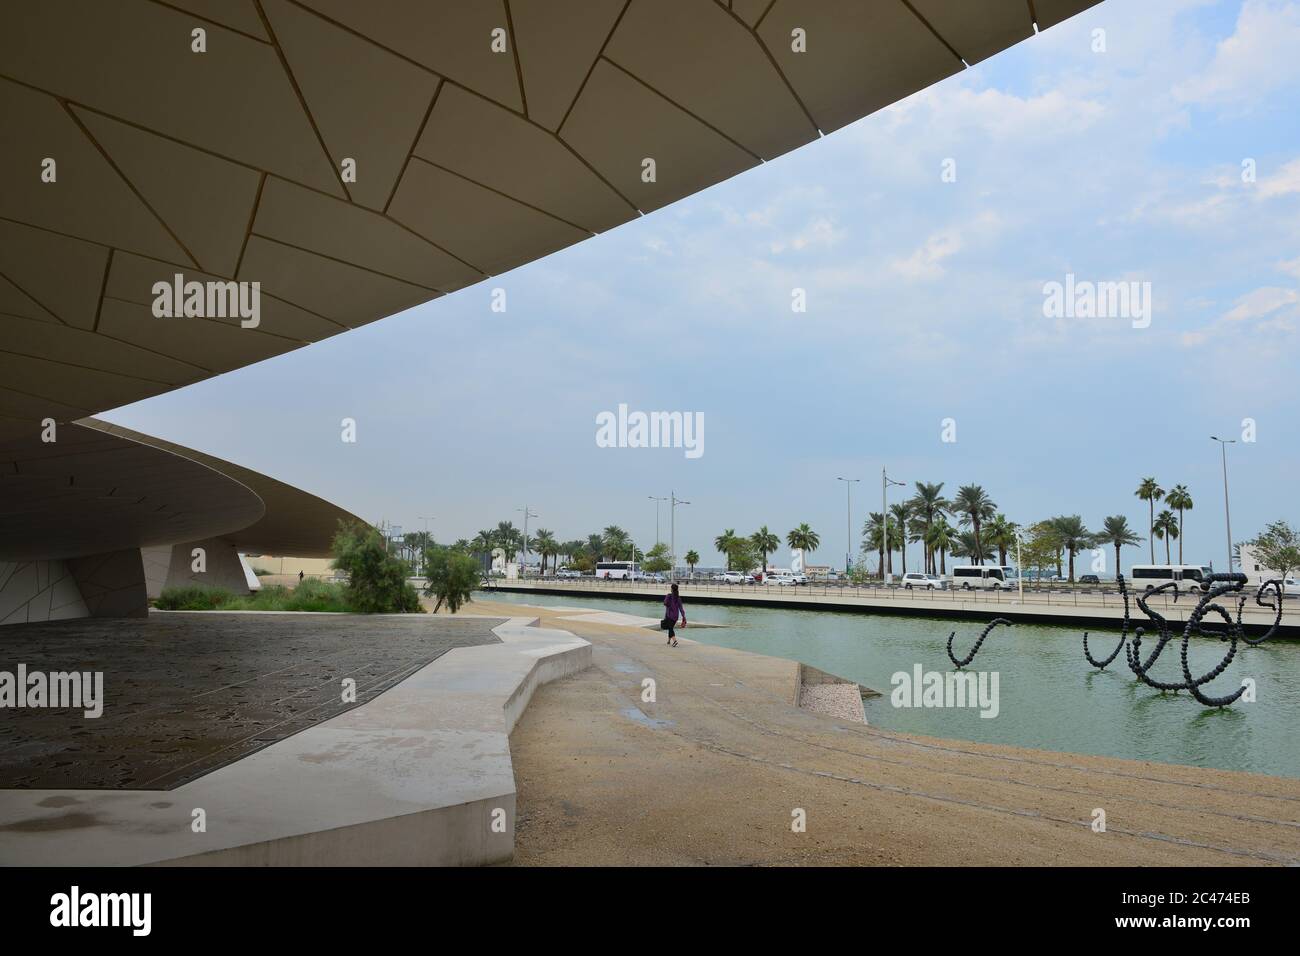 Qatar national museum Stock Photo